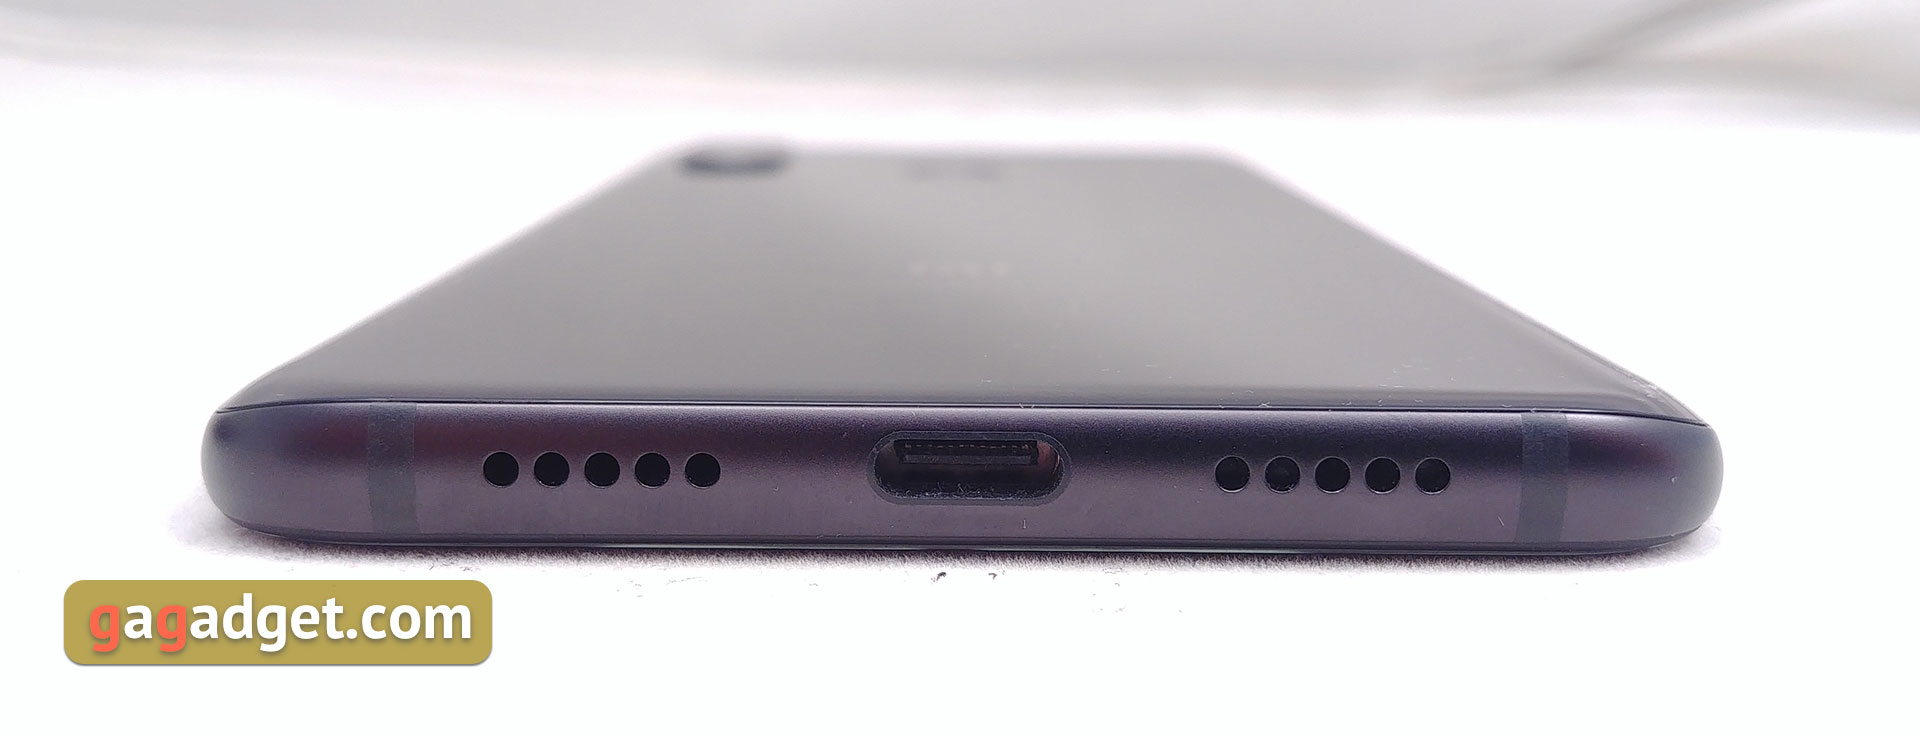 Обзор Xiaomi Mi 8: максимум мощности с приятным ценником-12